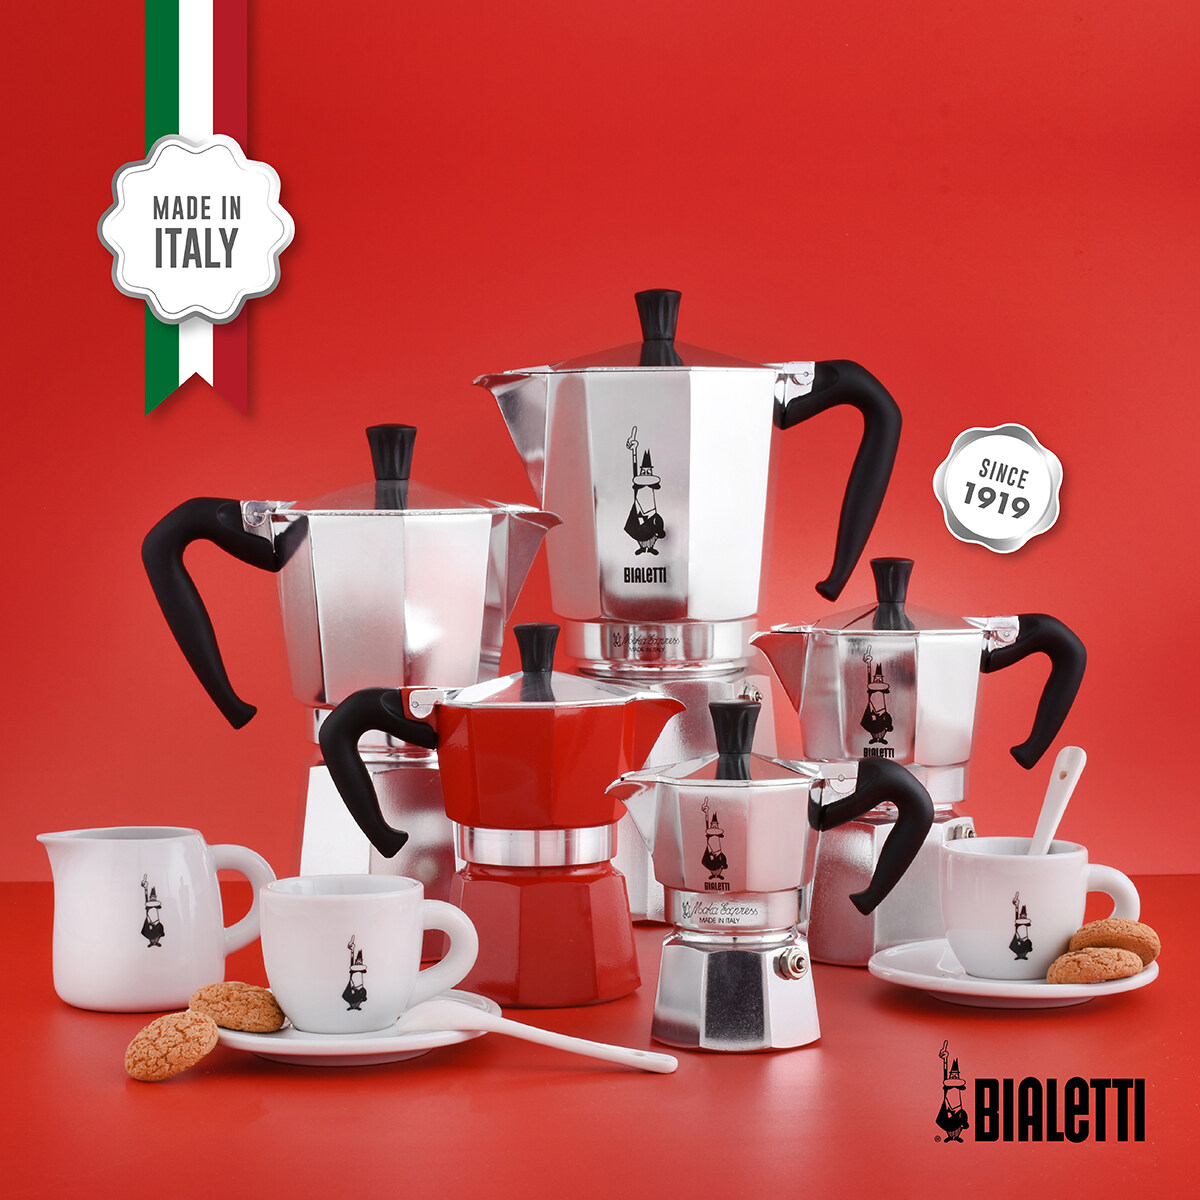 Bialetti หม้อต้มกาแฟ Moka Pot รุ่นโมคาเอ็กซ์เพรสอิตาลี ขนาด 6 ถ้วย